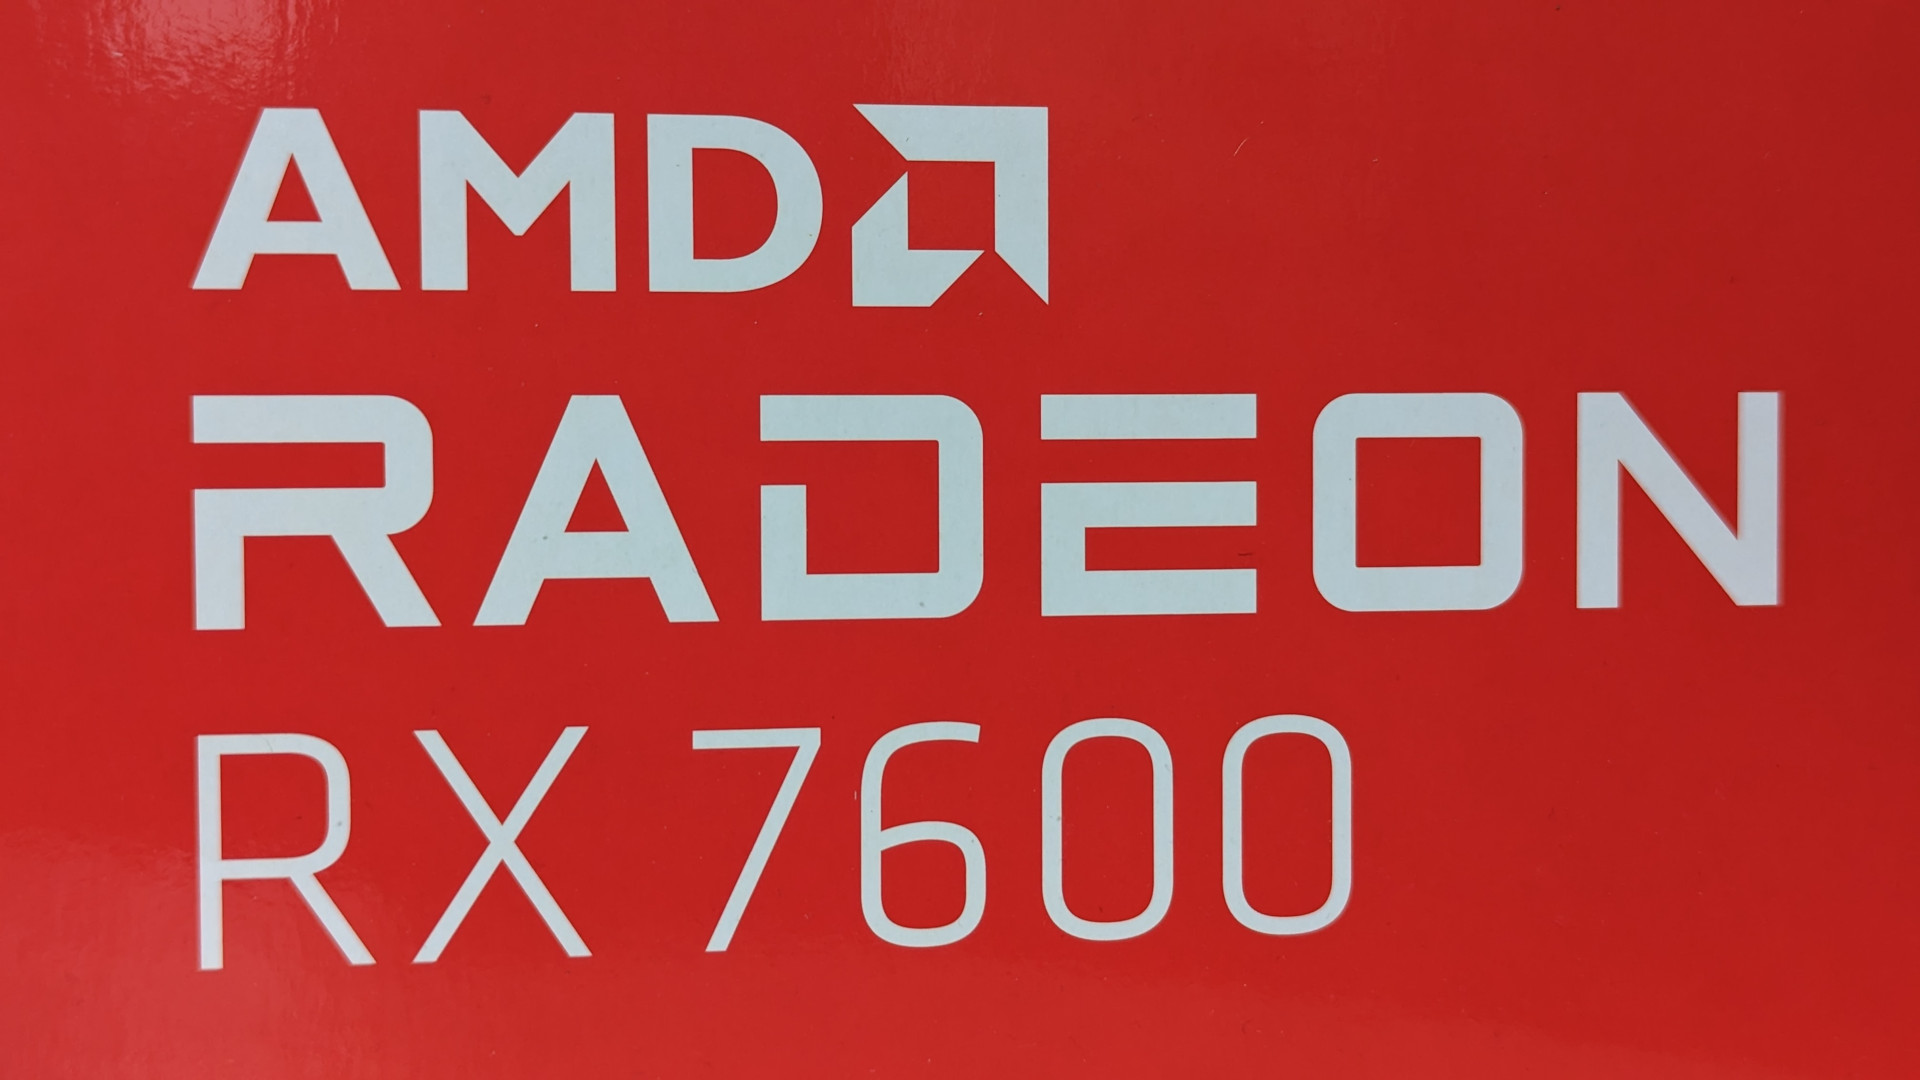 Revisión de AMD Radeon RX 7600: el texto blanco oficial 'AMD Radeon RX 7600' sobre un fondo rojo